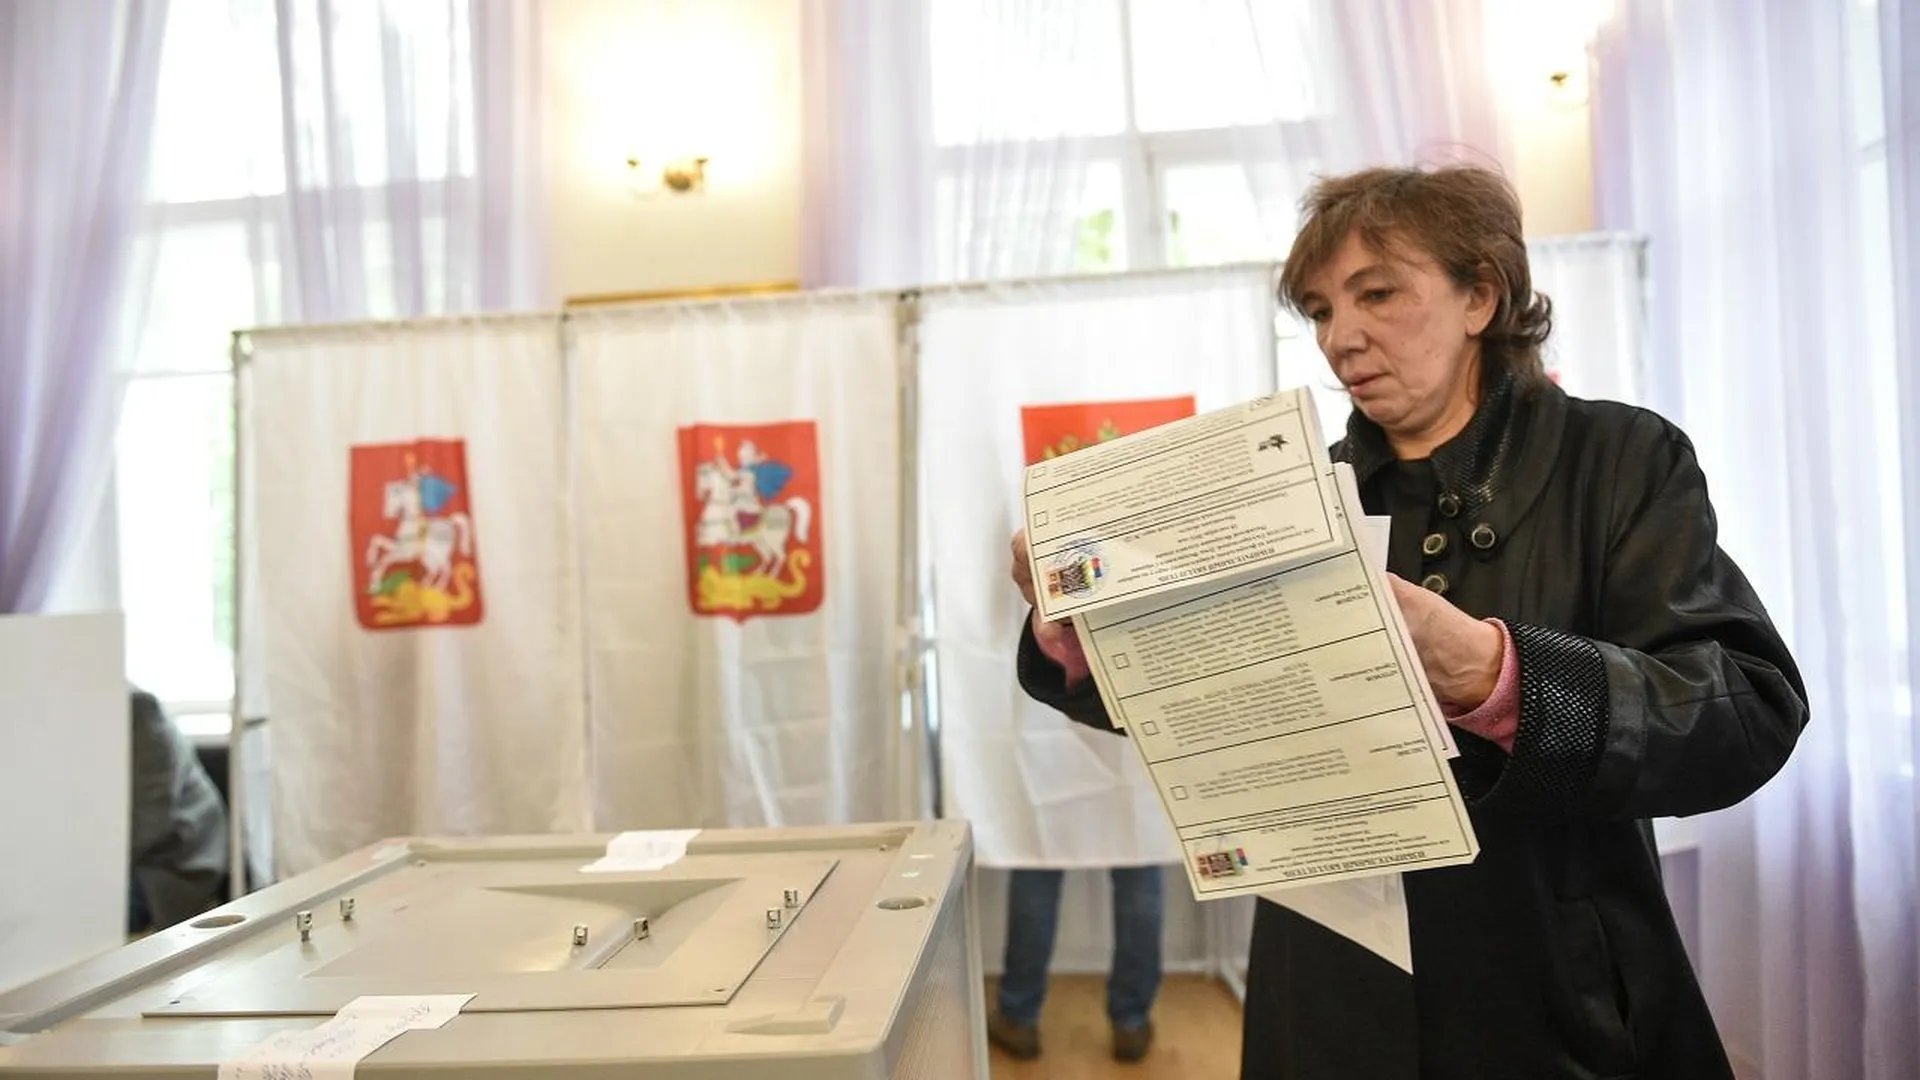 Жителям Подмосковья рассказали, где можно получить необходимую информацию о выборах президента